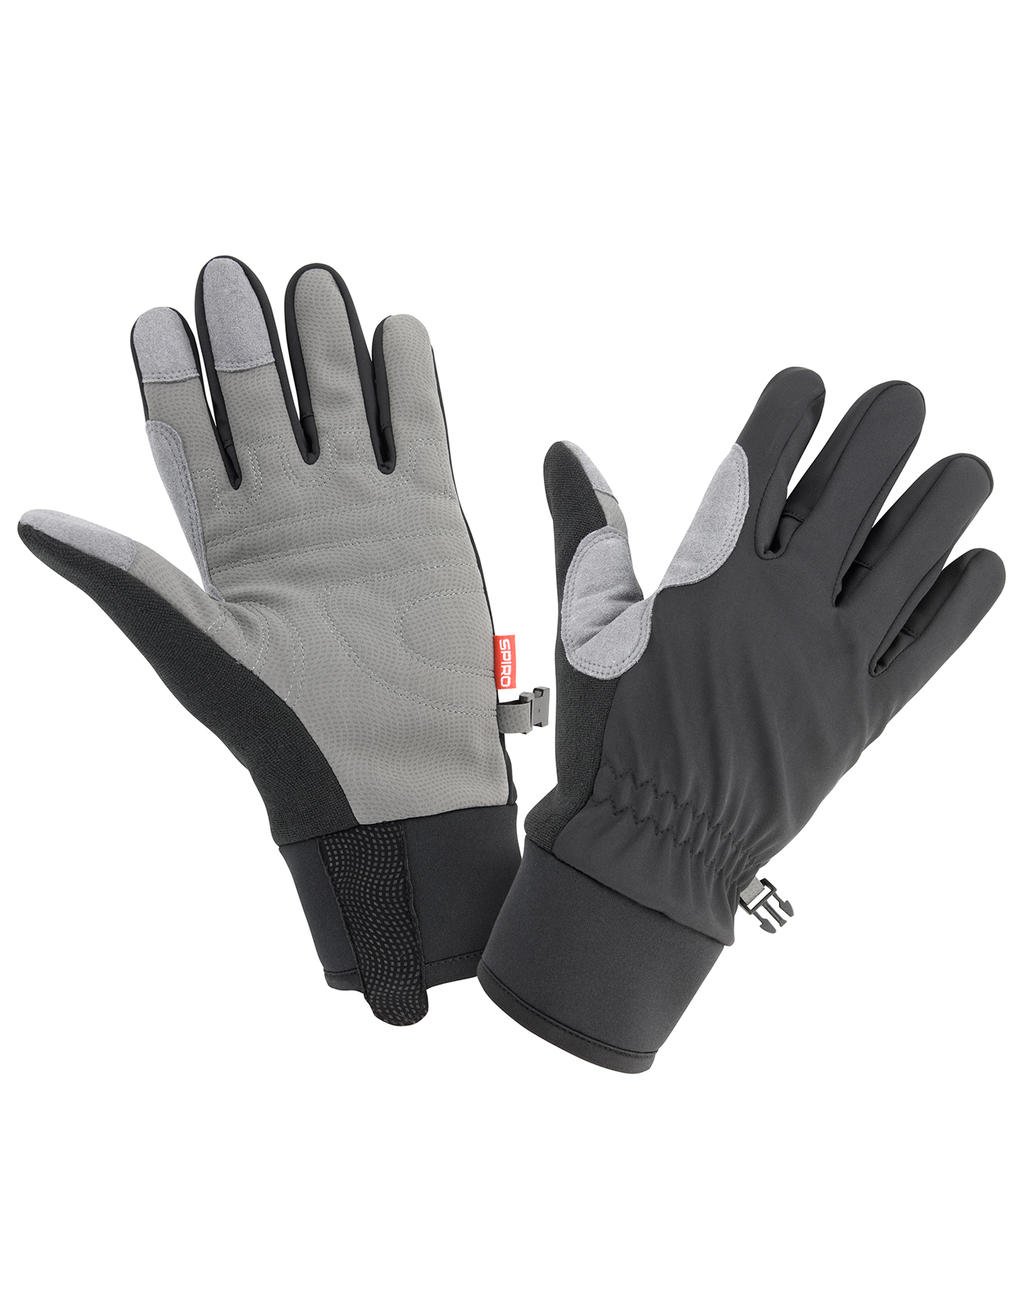  Spiro Winter Gloves in Farbe Black/Grey